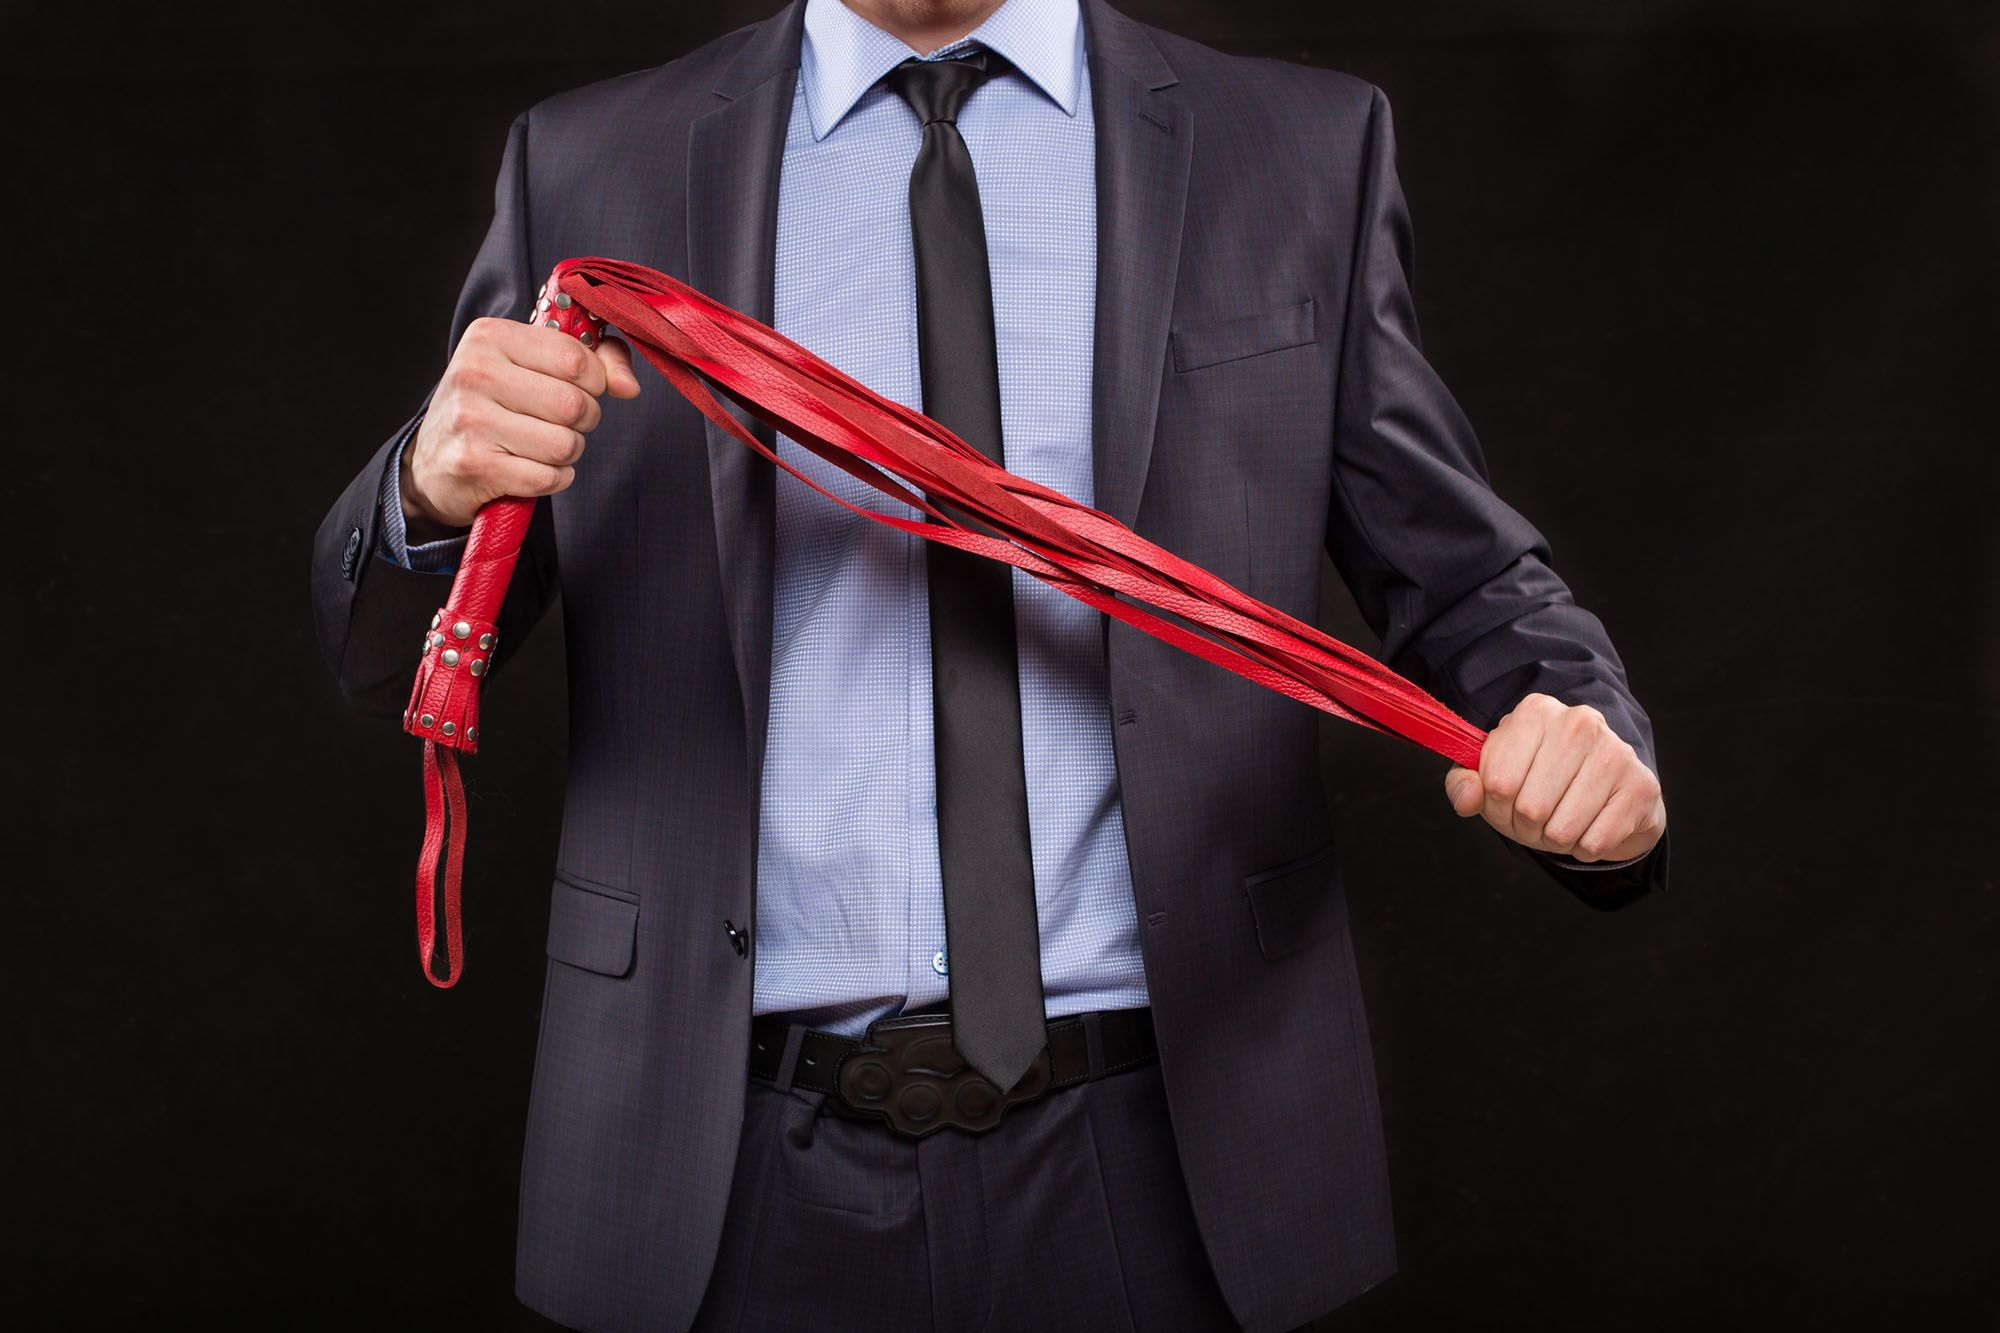 Mann im Anzug hält eine rote Peitsche in den Händen